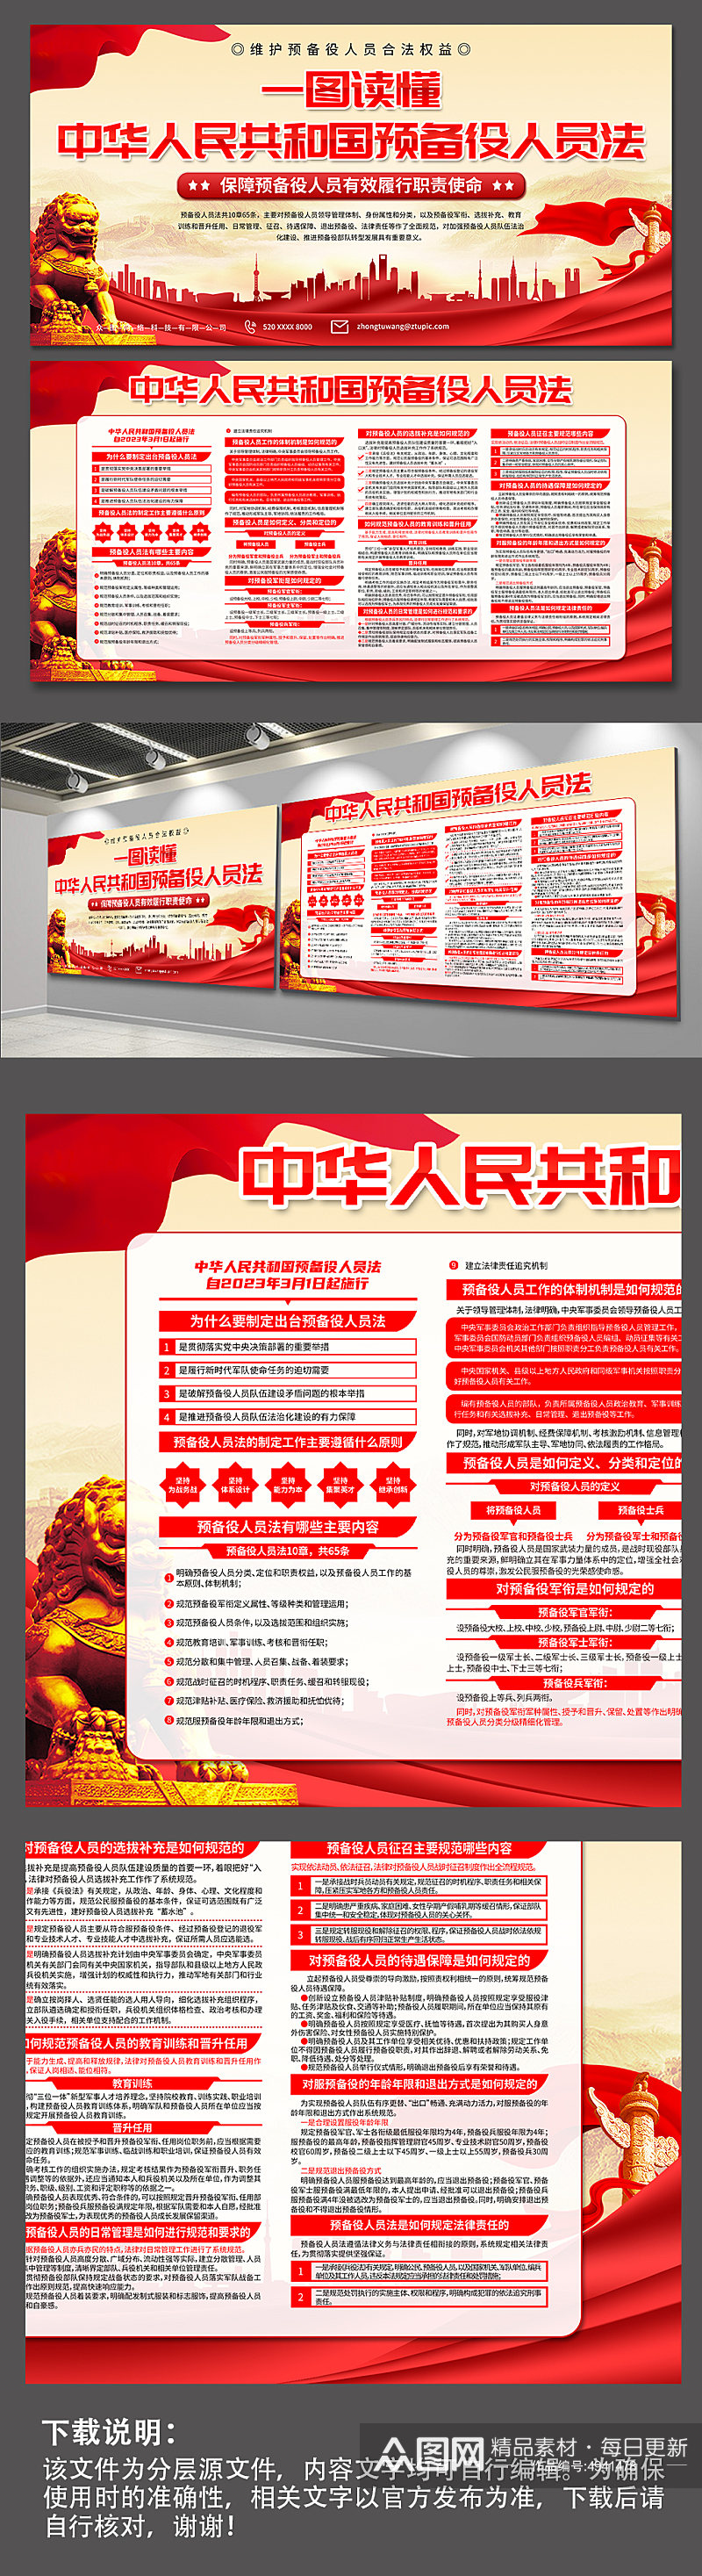 红色中华人民共和国预备役人员法党建展板素材